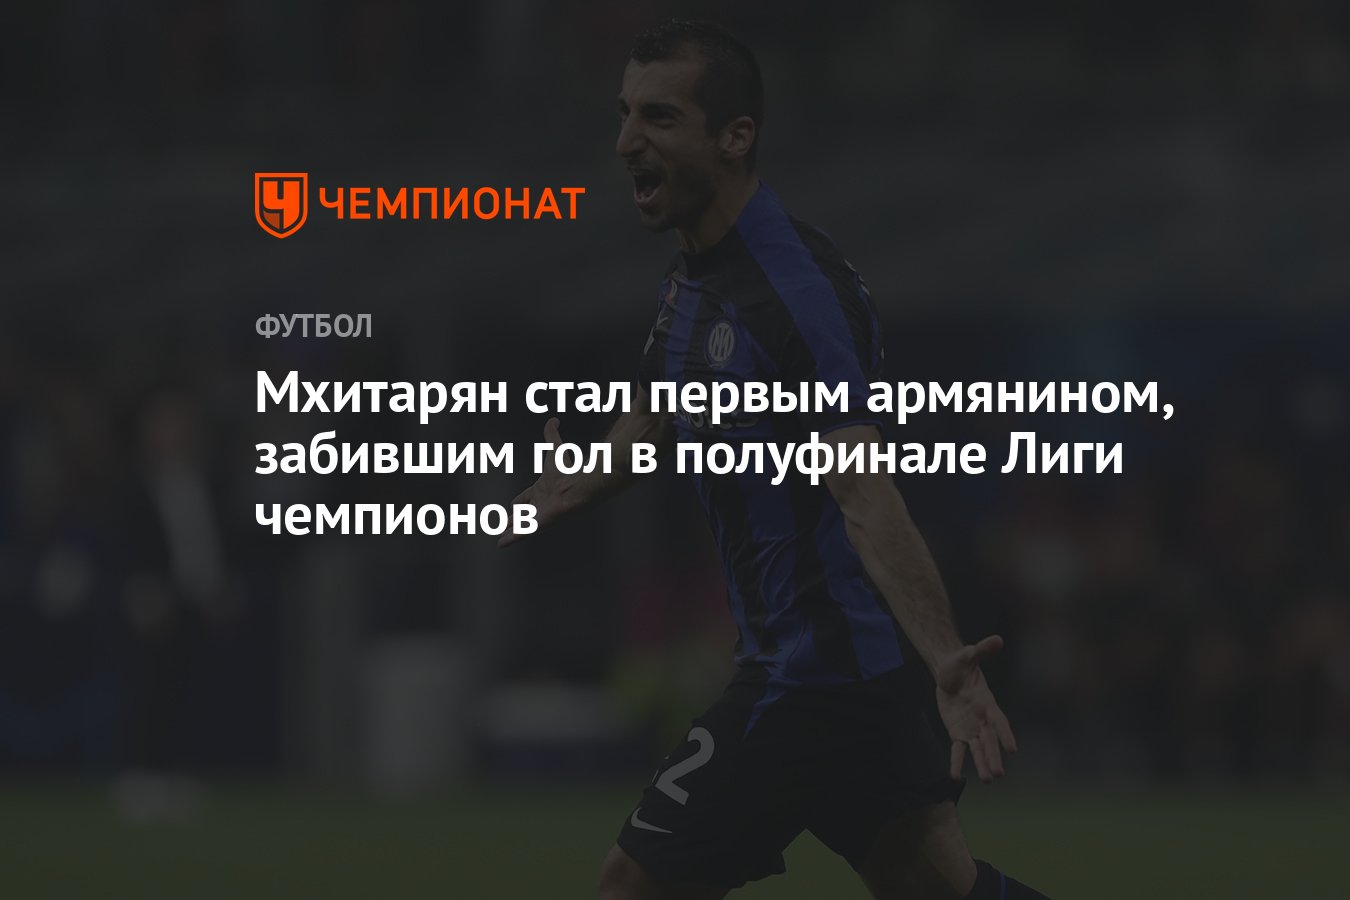 Мхитарян стал первым армянином, забившим гол в полуфинале Лиги чемпионов -  Чемпионат